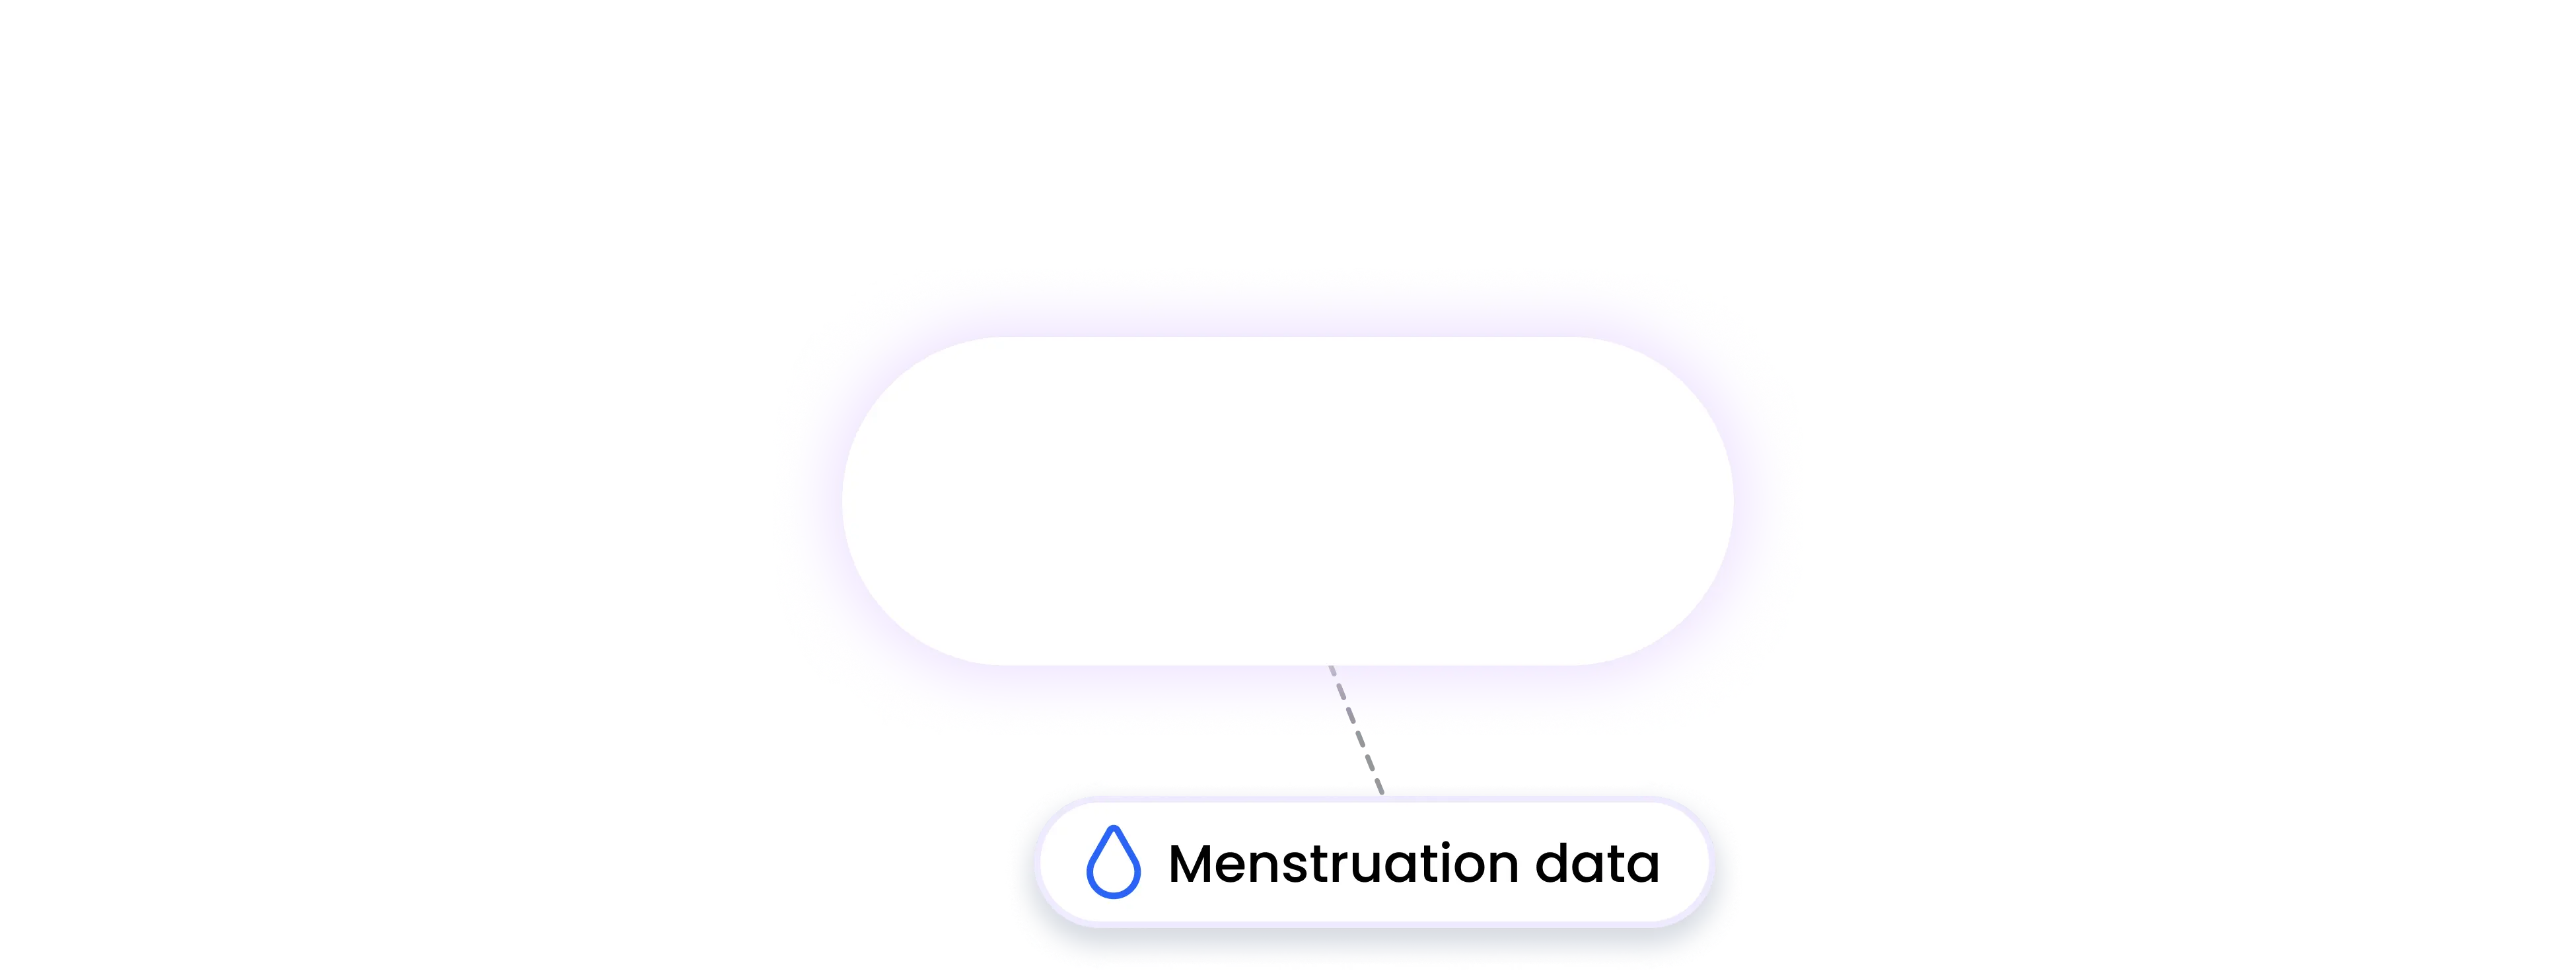 oura integration MENSTRUATION data